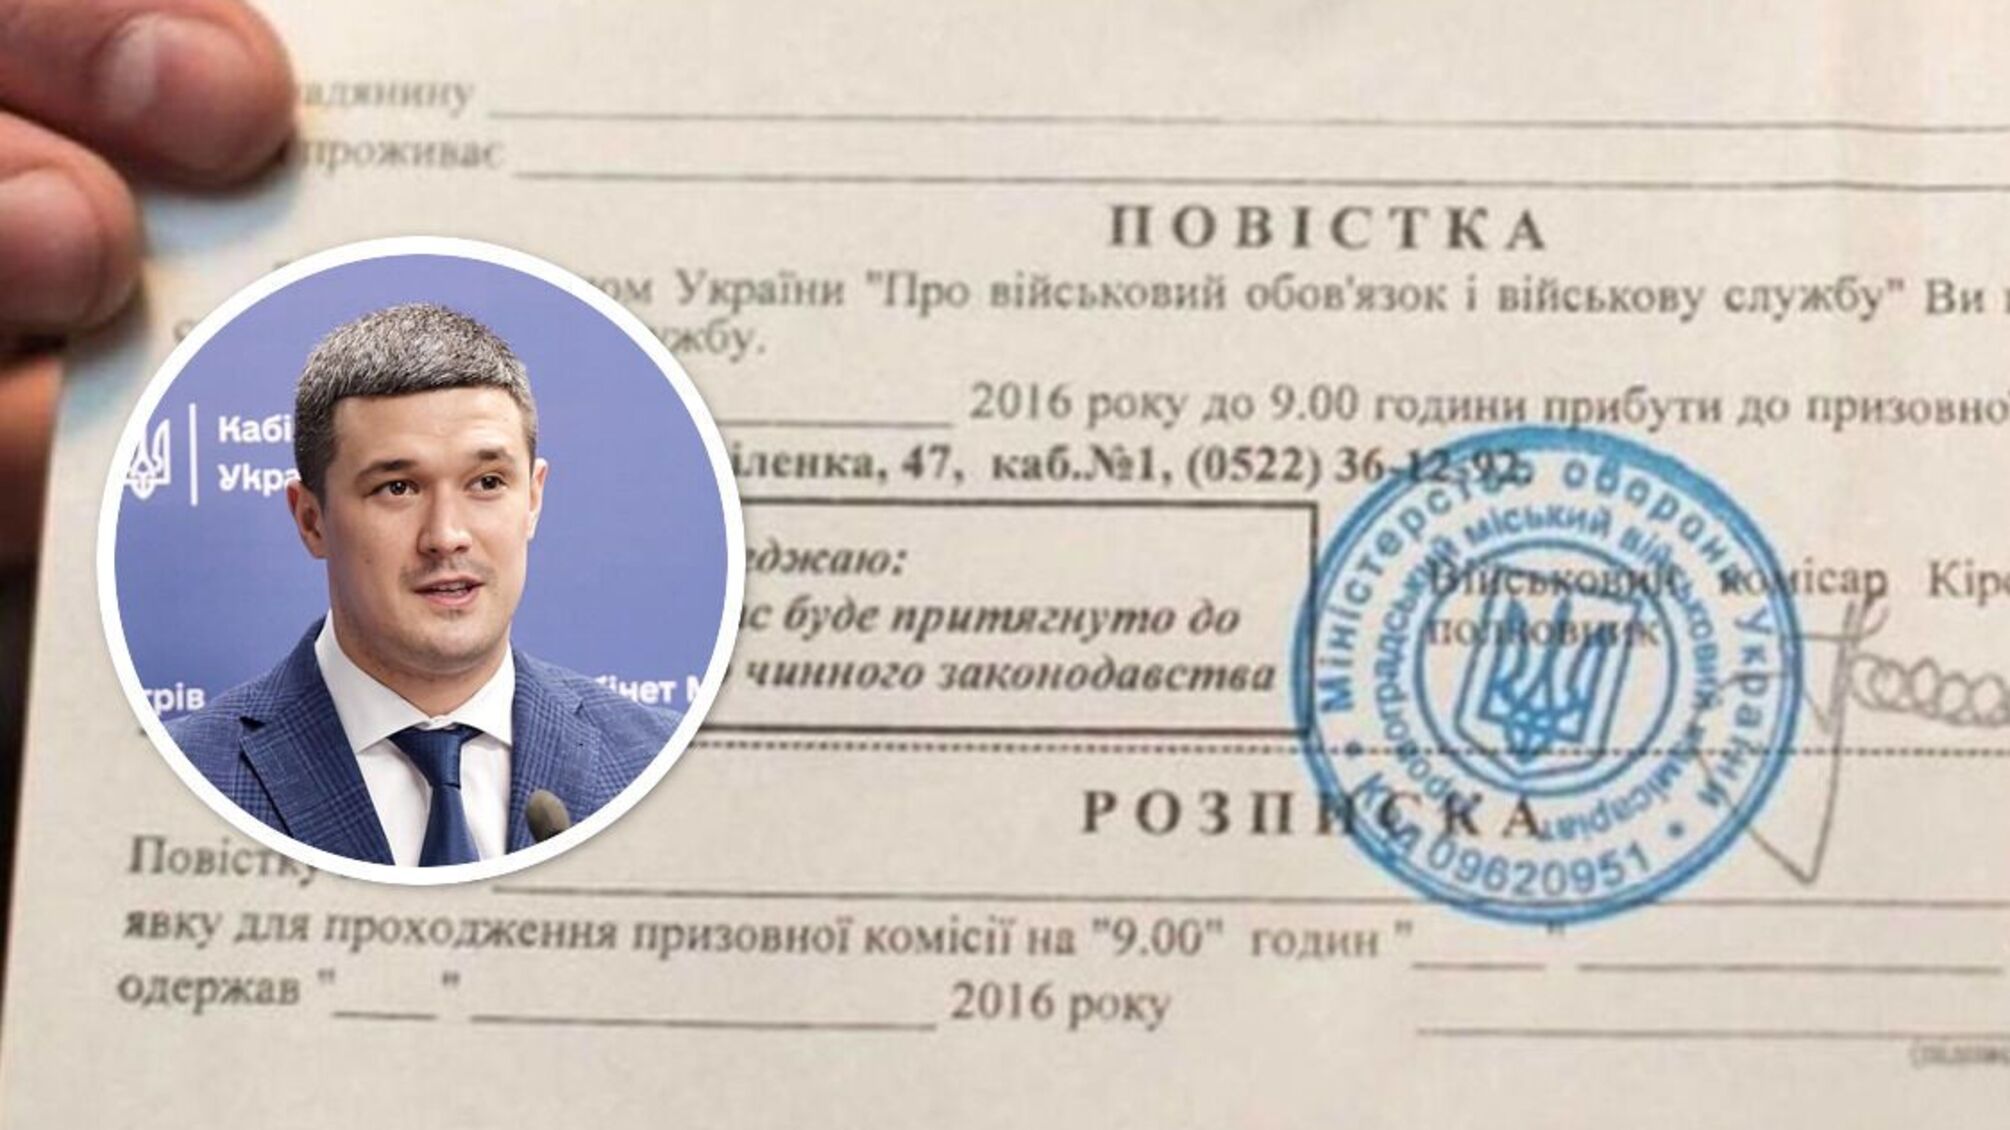 'Это невозможно сделать': министр Федоров прокомментировал рассылку повесток в мессенджерах